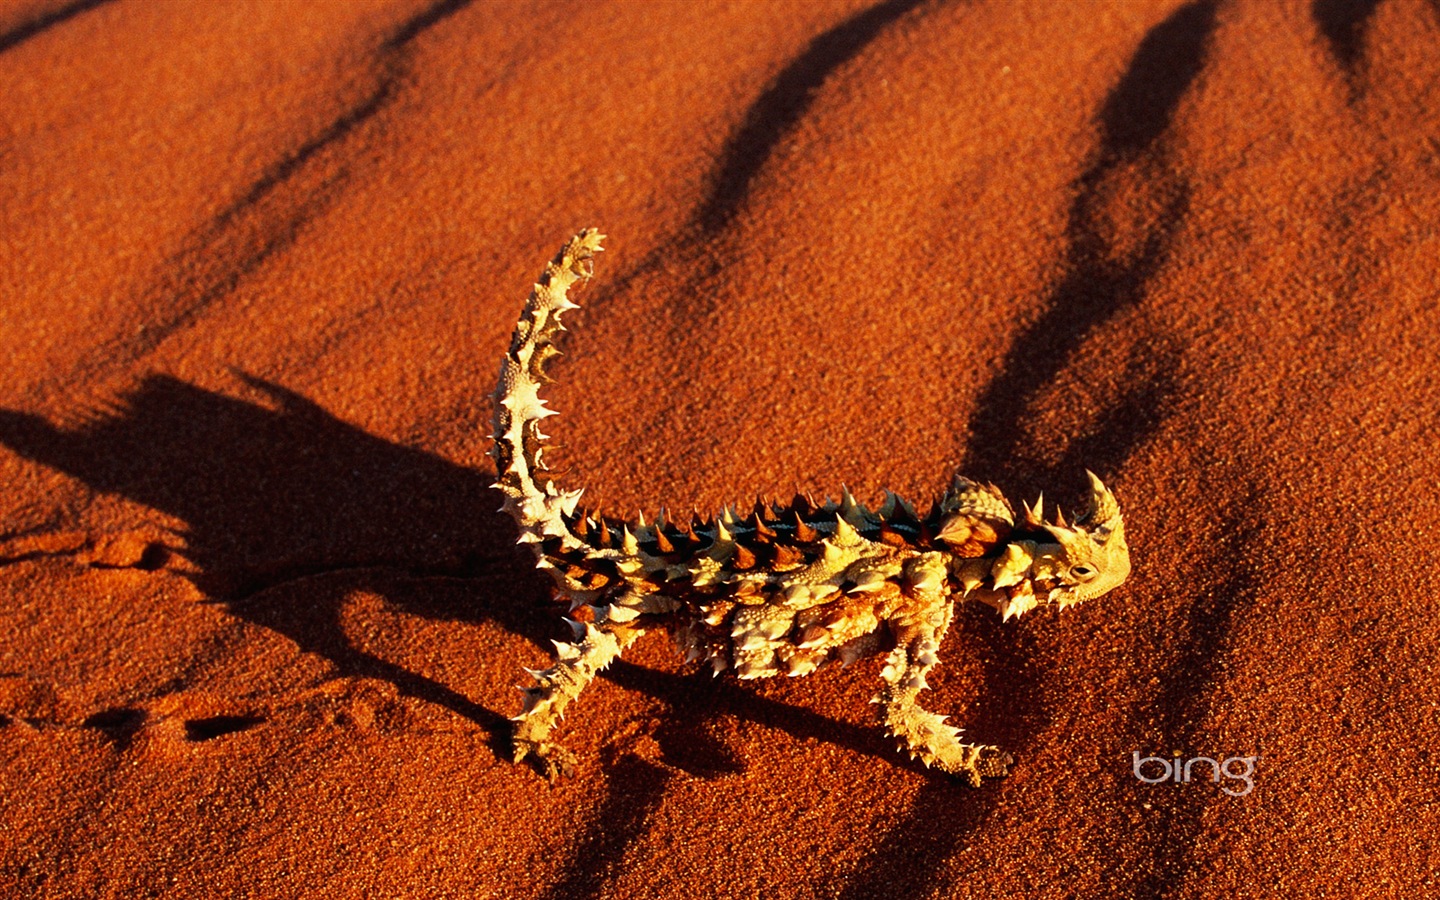 Bing Australie thème fonds d'écran HD, animaux, nature, bâtiments #7 - 1440x900